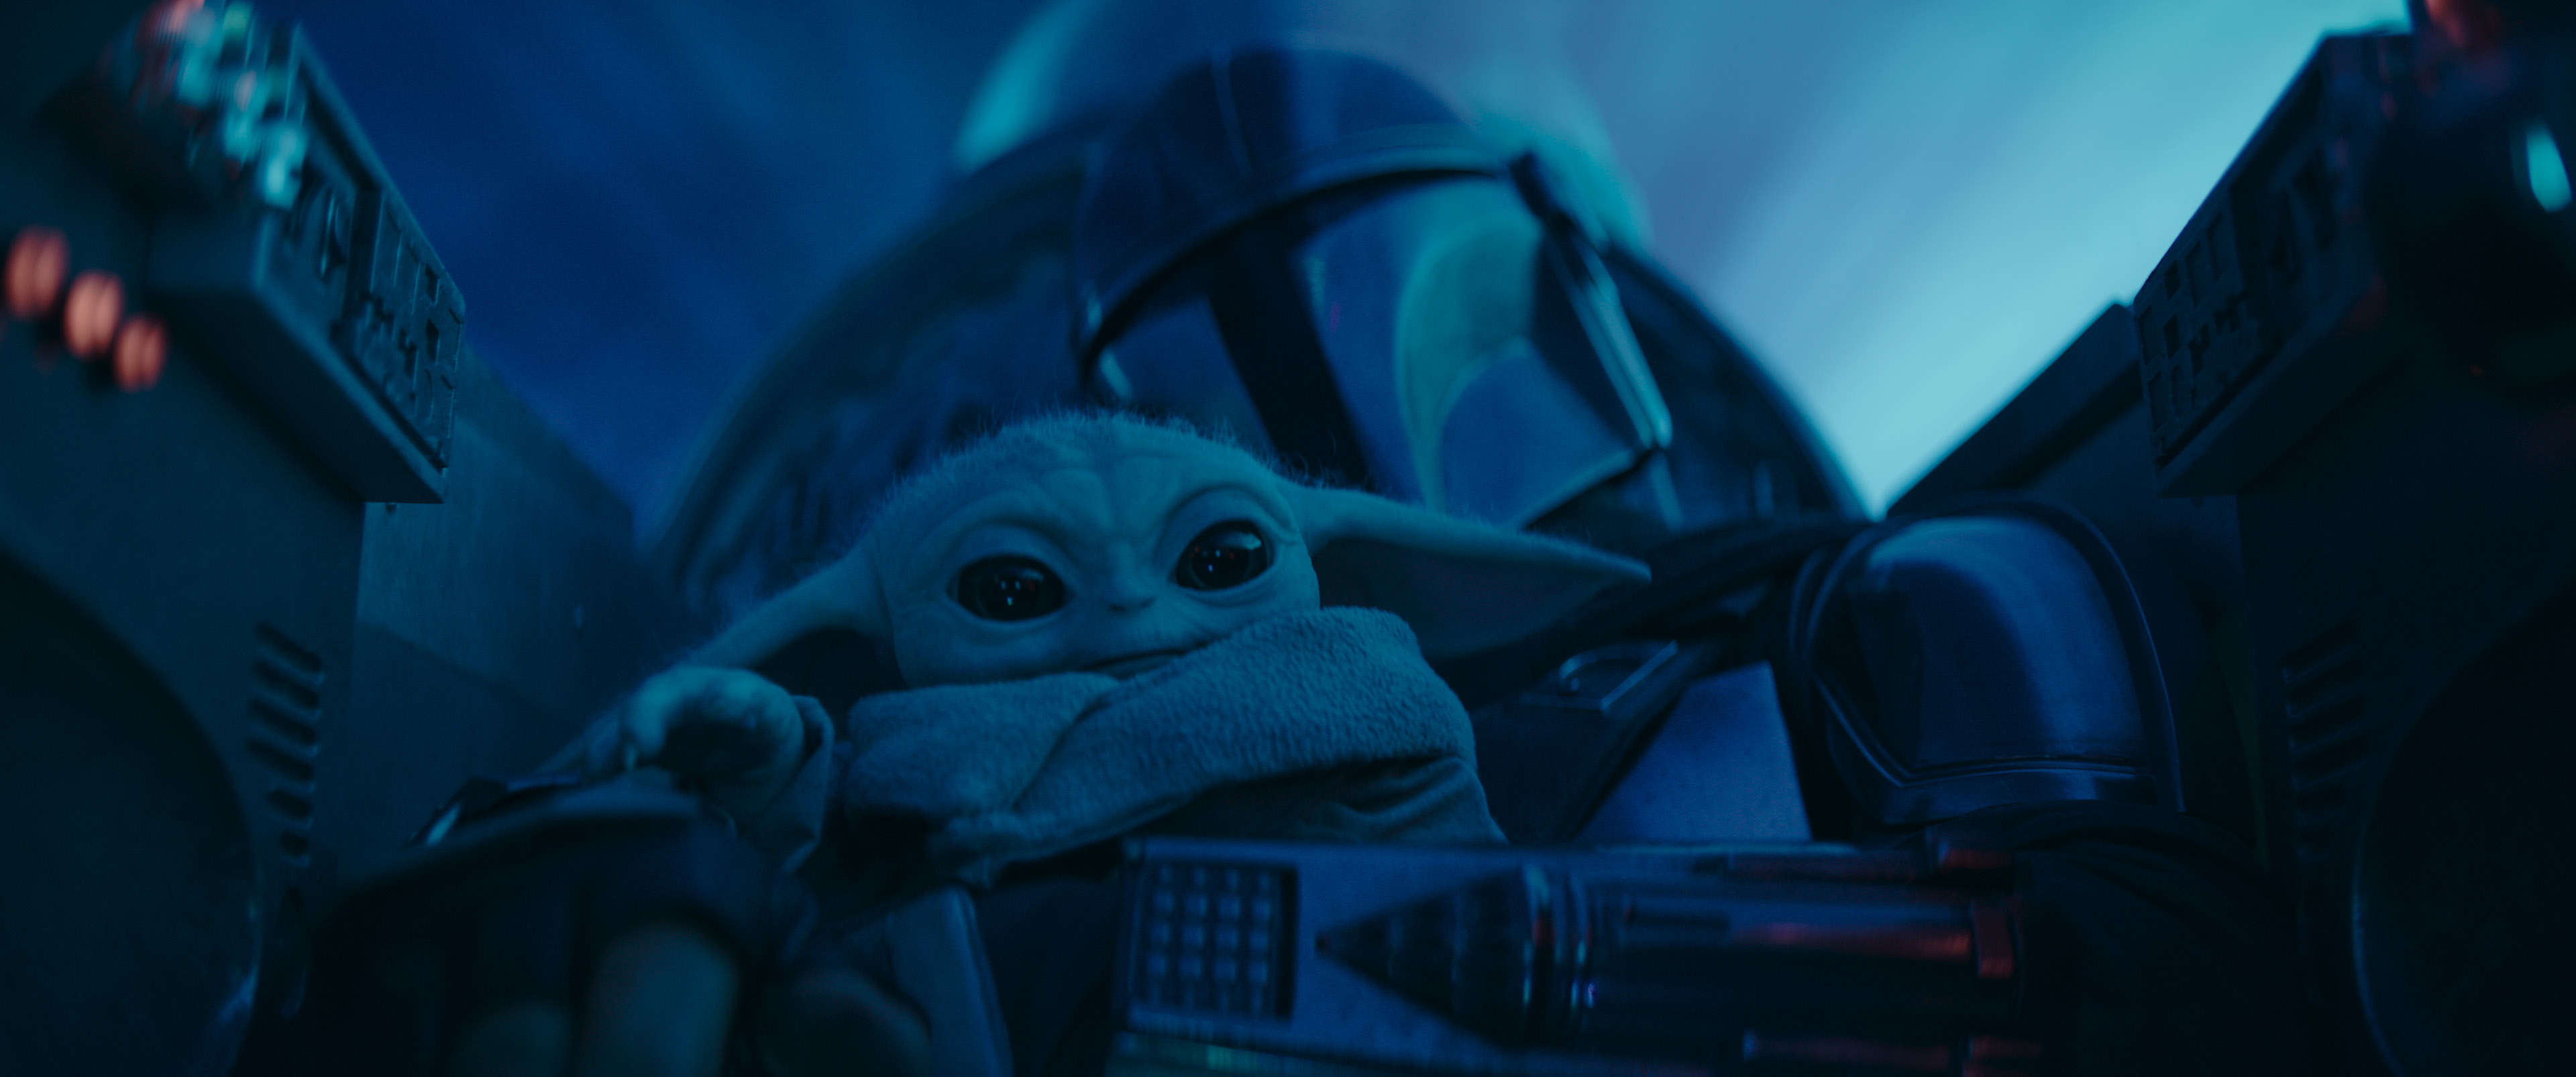 Mando "Baby Yodan" seurassa aluksellaan. Kuva The Mandalorian -sarjasta Disney+:ssa.